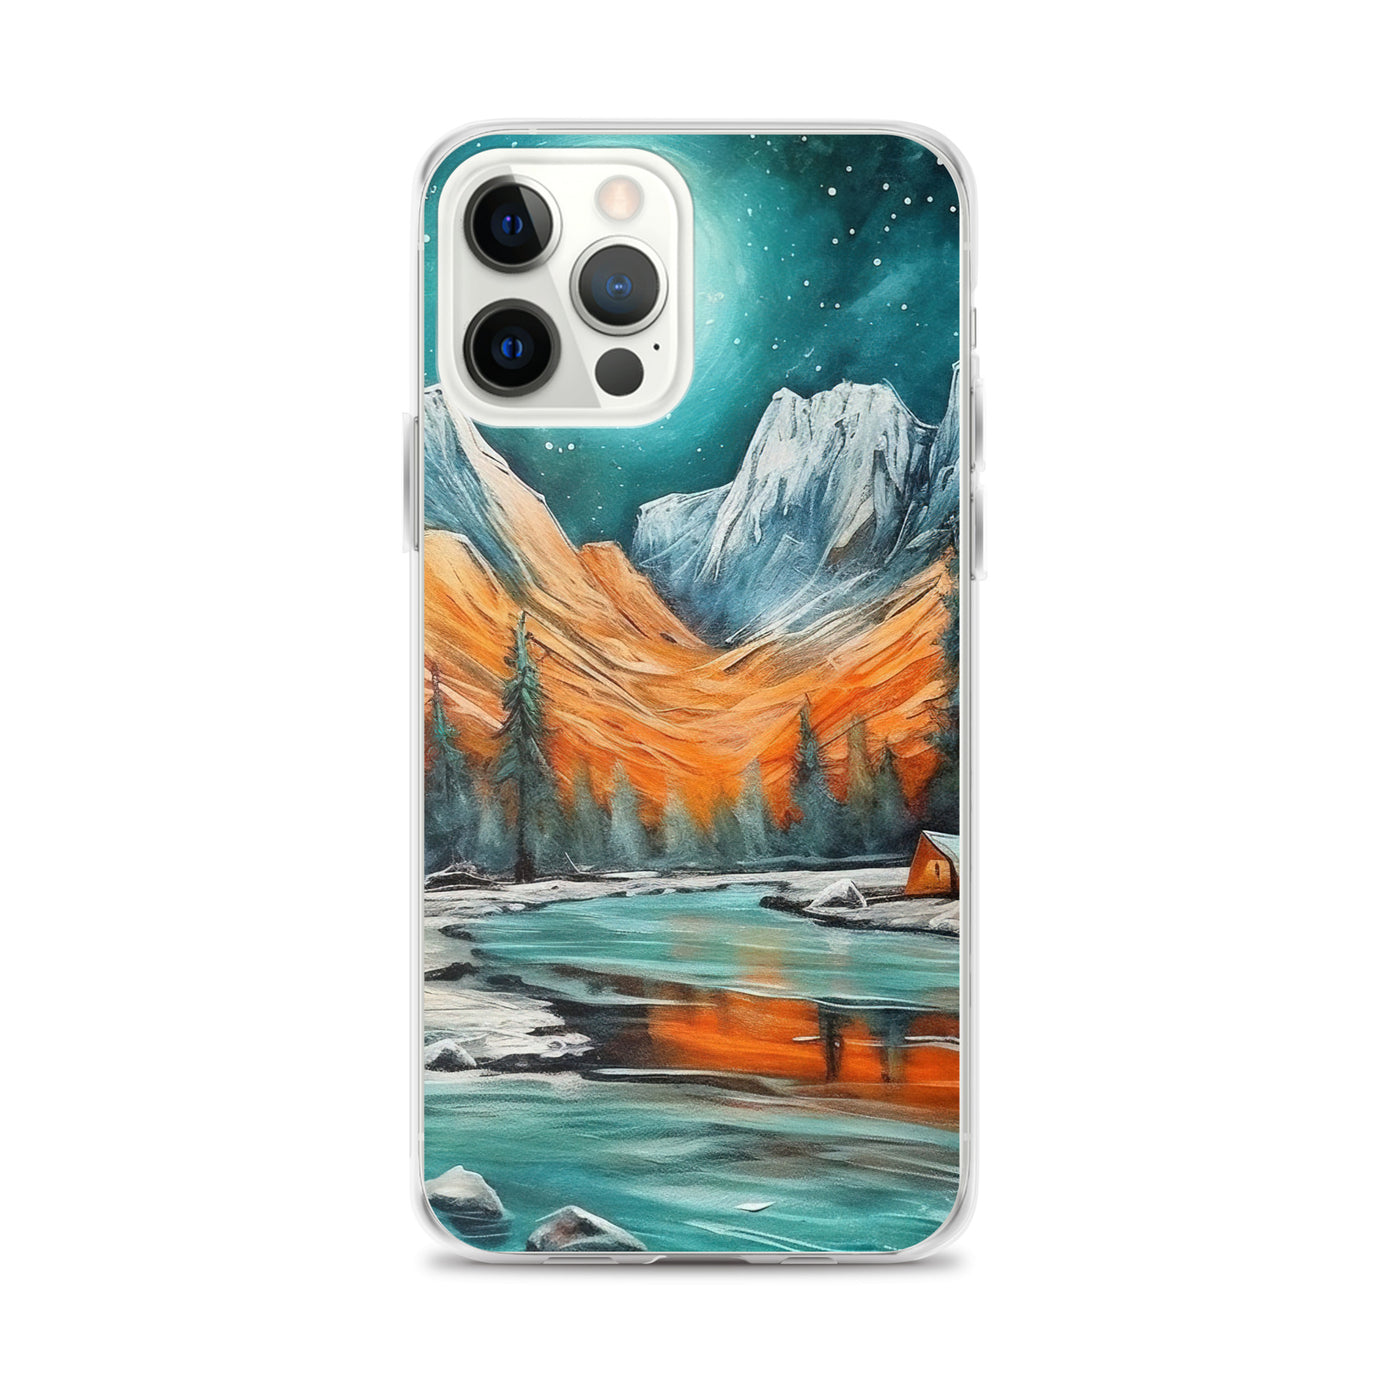 Berglandschaft und Zelte - Nachtstimmung - Landschaftsmalerei - iPhone Schutzhülle (durchsichtig) camping xxx iPhone 12 Pro Max